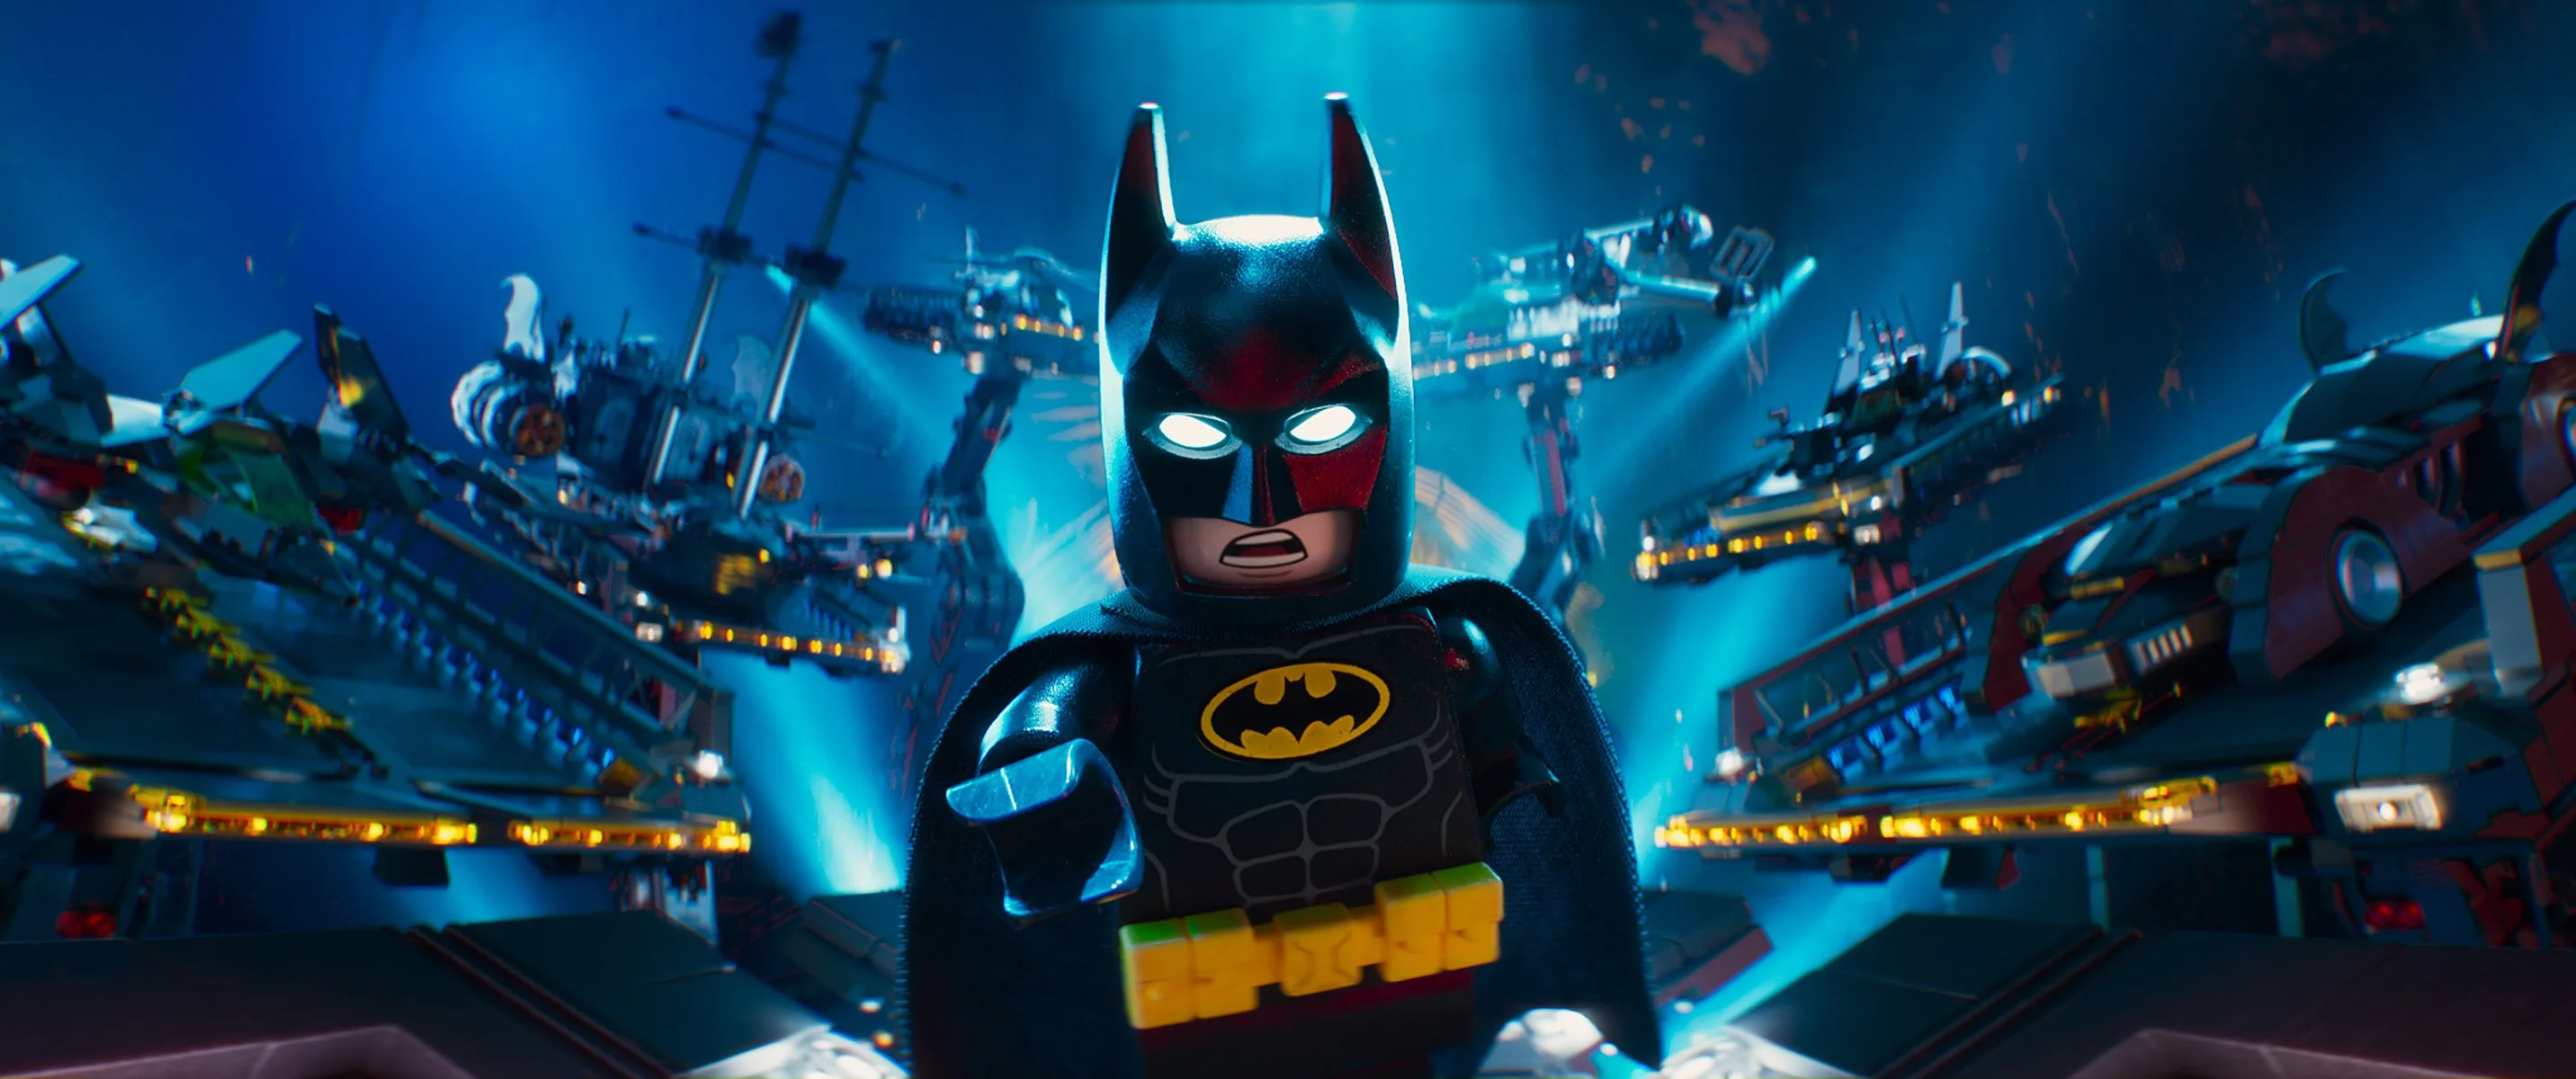 Рецензия на «Лего Фильм: Бэтмен» - фото 2